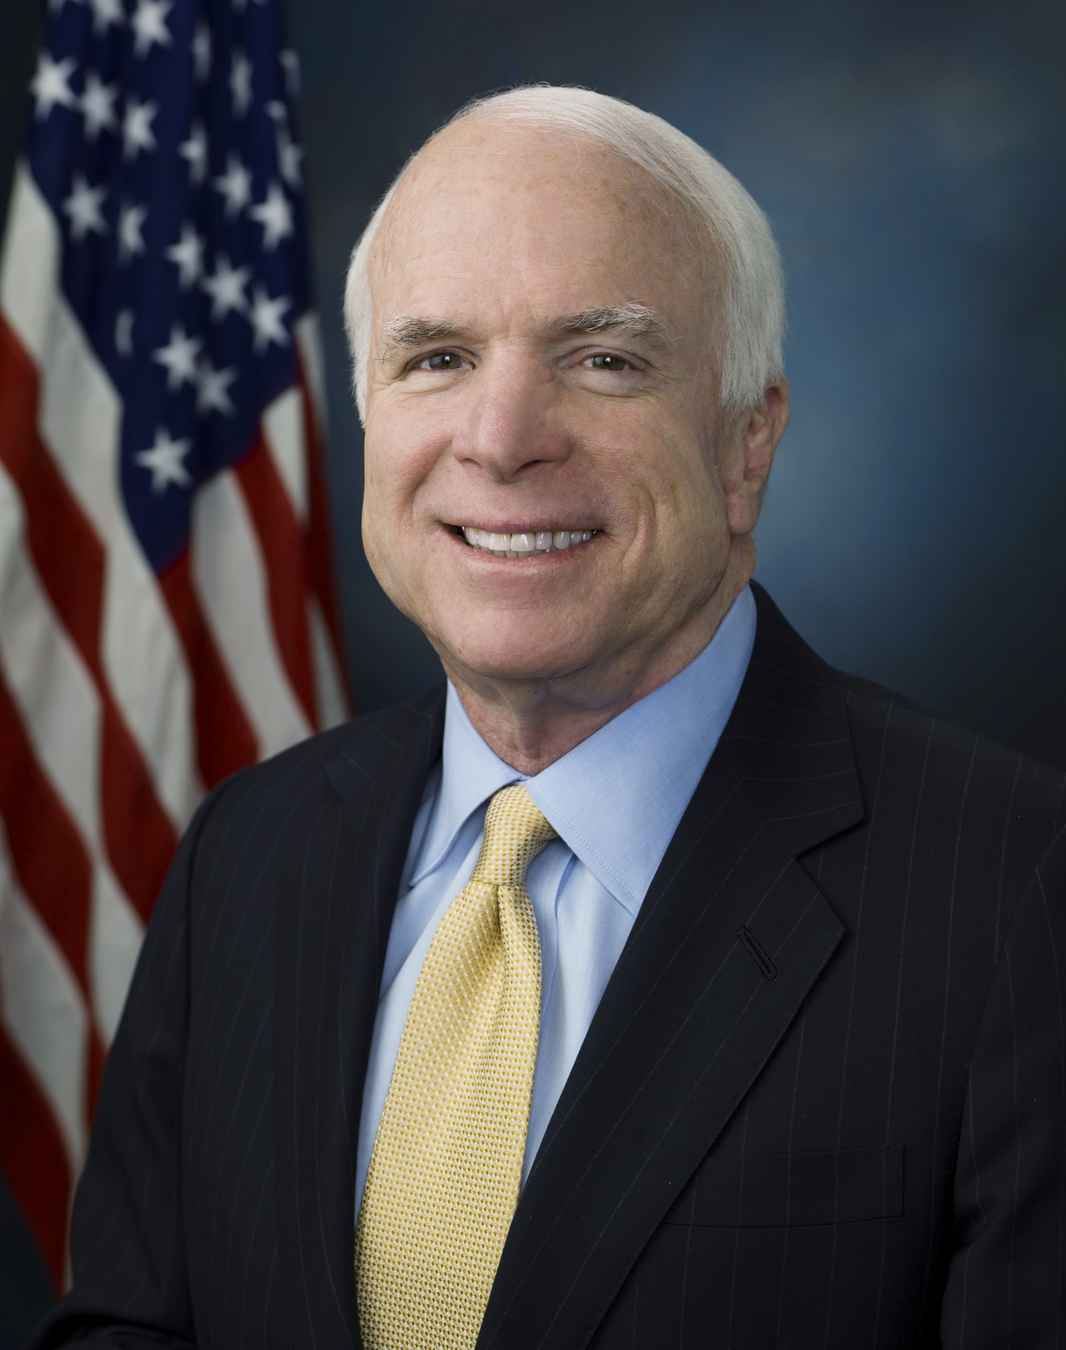 John_McCain_10ofhearts